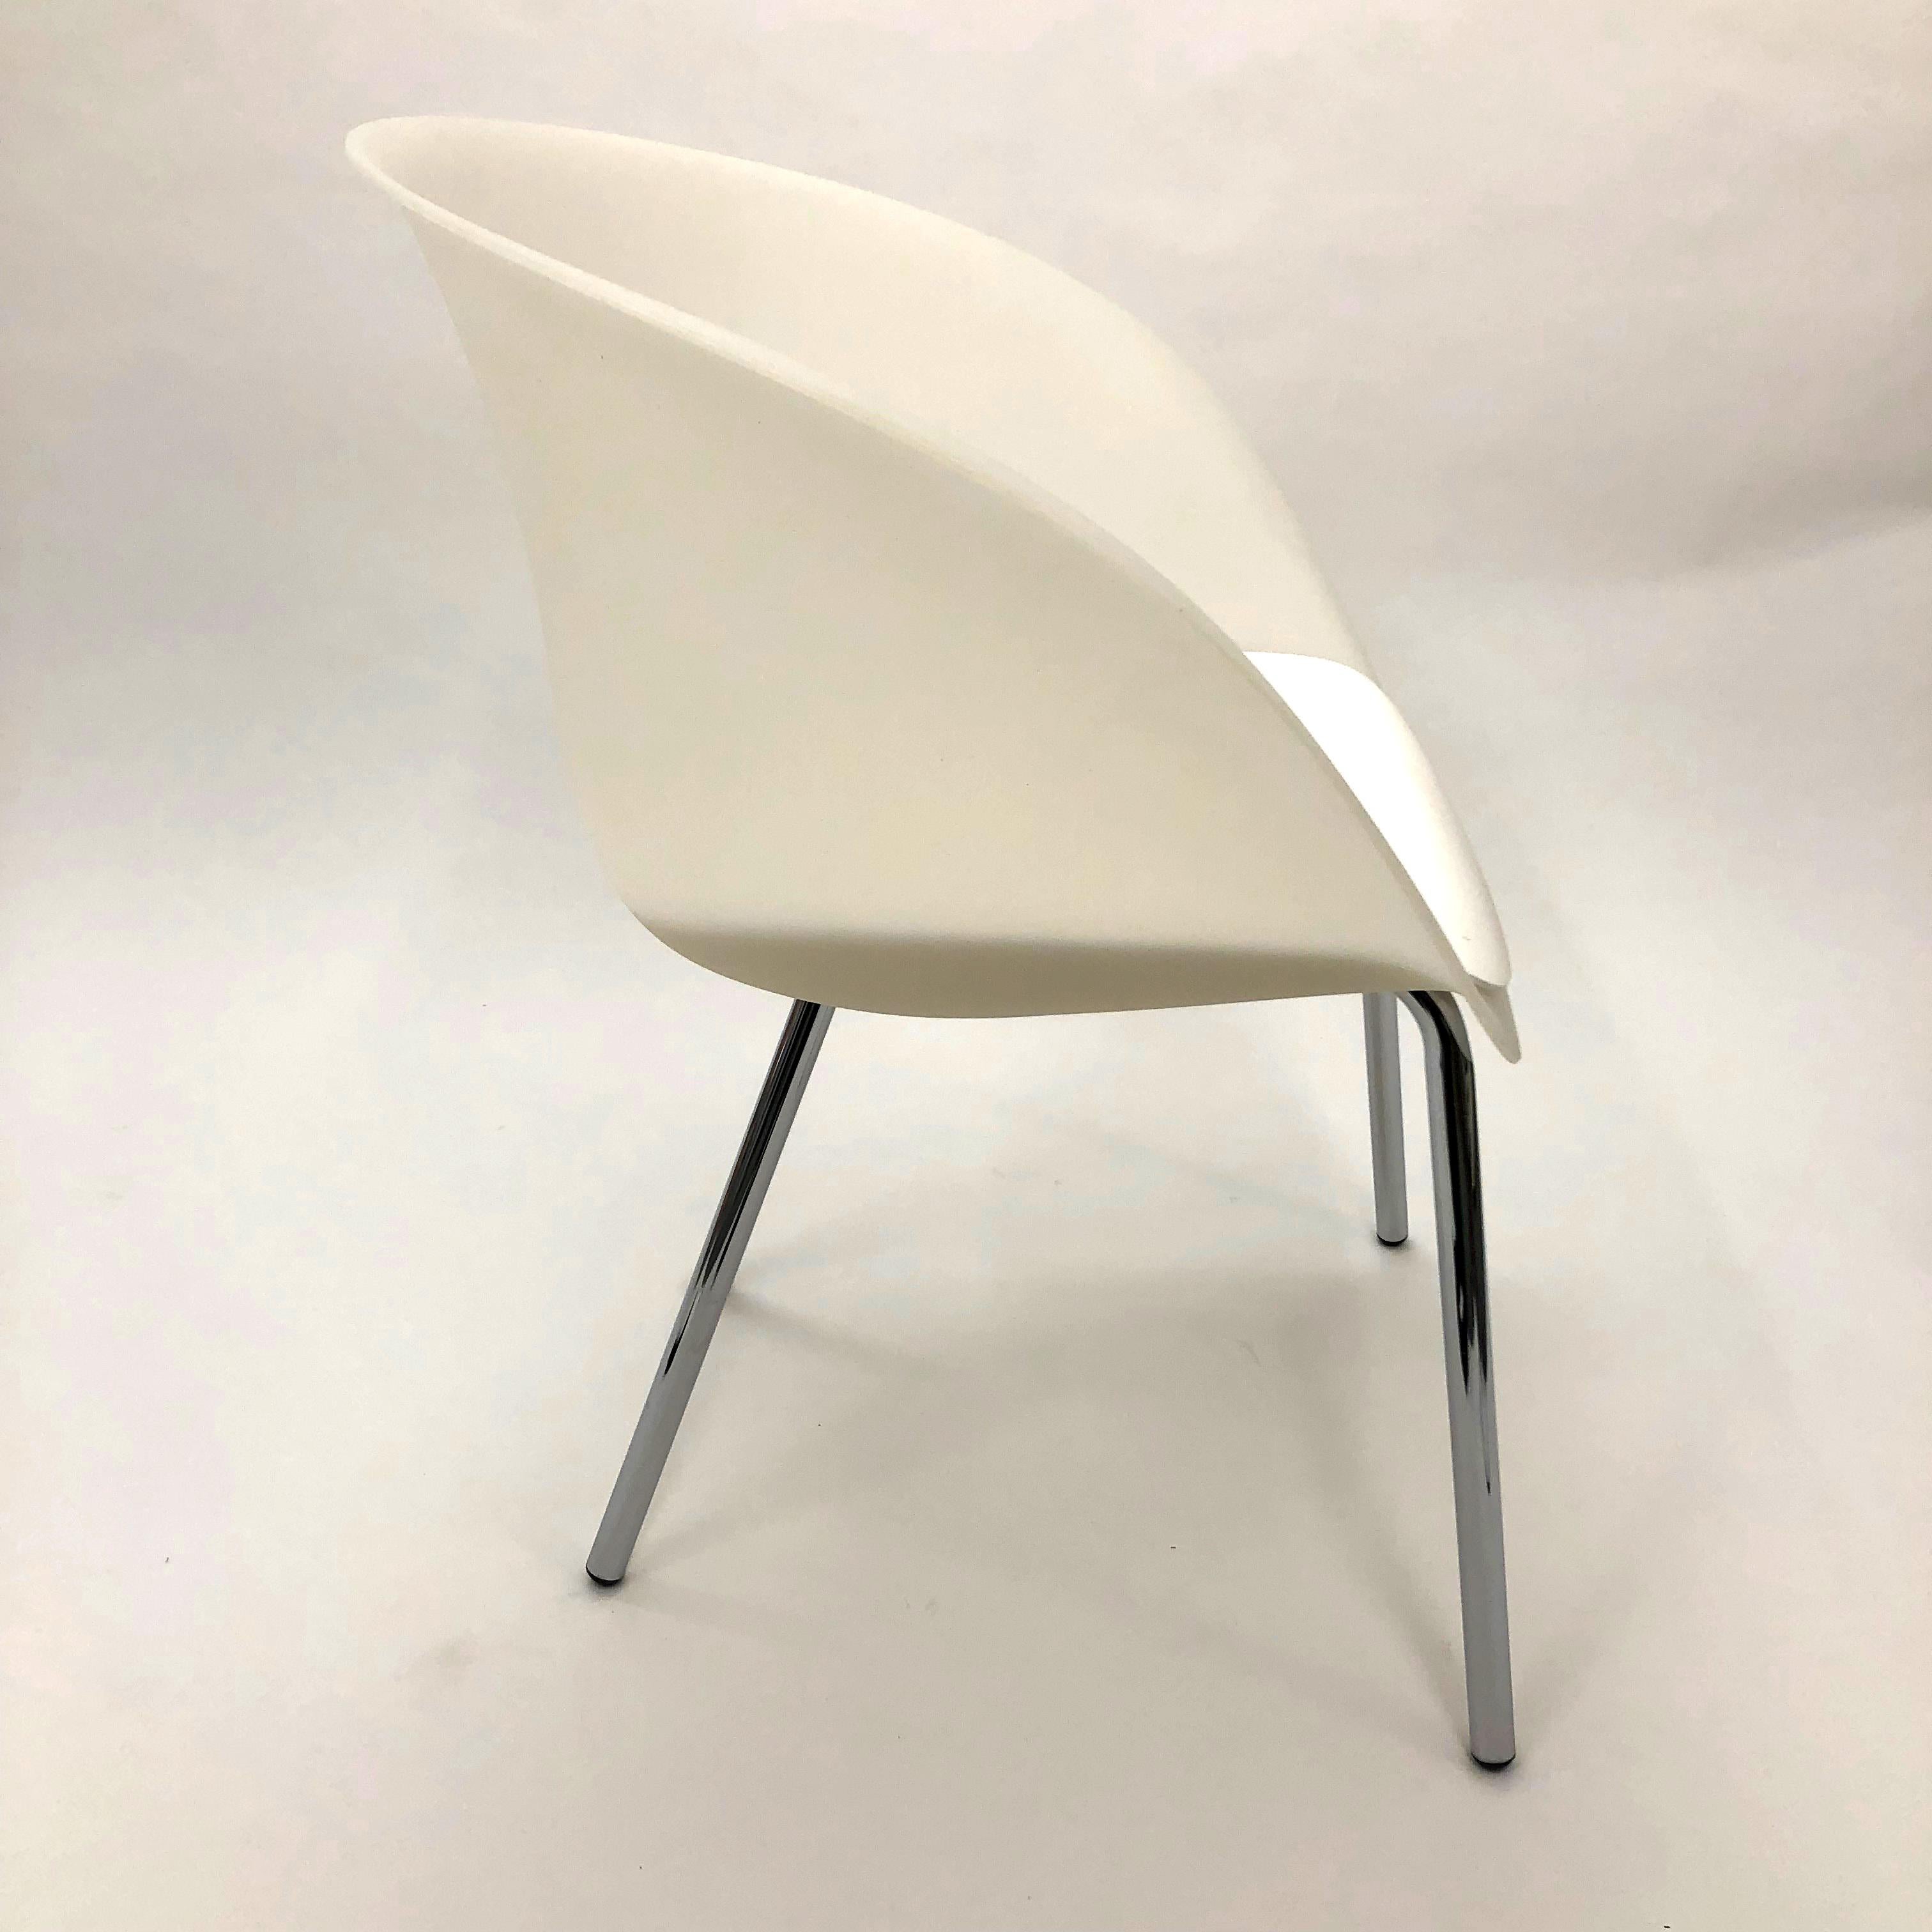 Une mise à jour en plastique moulé de la chaise baignoire classique, la chaise Olo d'Andrew Jones pour Keilhauer est très polyvalente. Prêt à être utilisé comme chaise d'appoint, chaise de conférence, de réception ou de salon. 

Cette coque